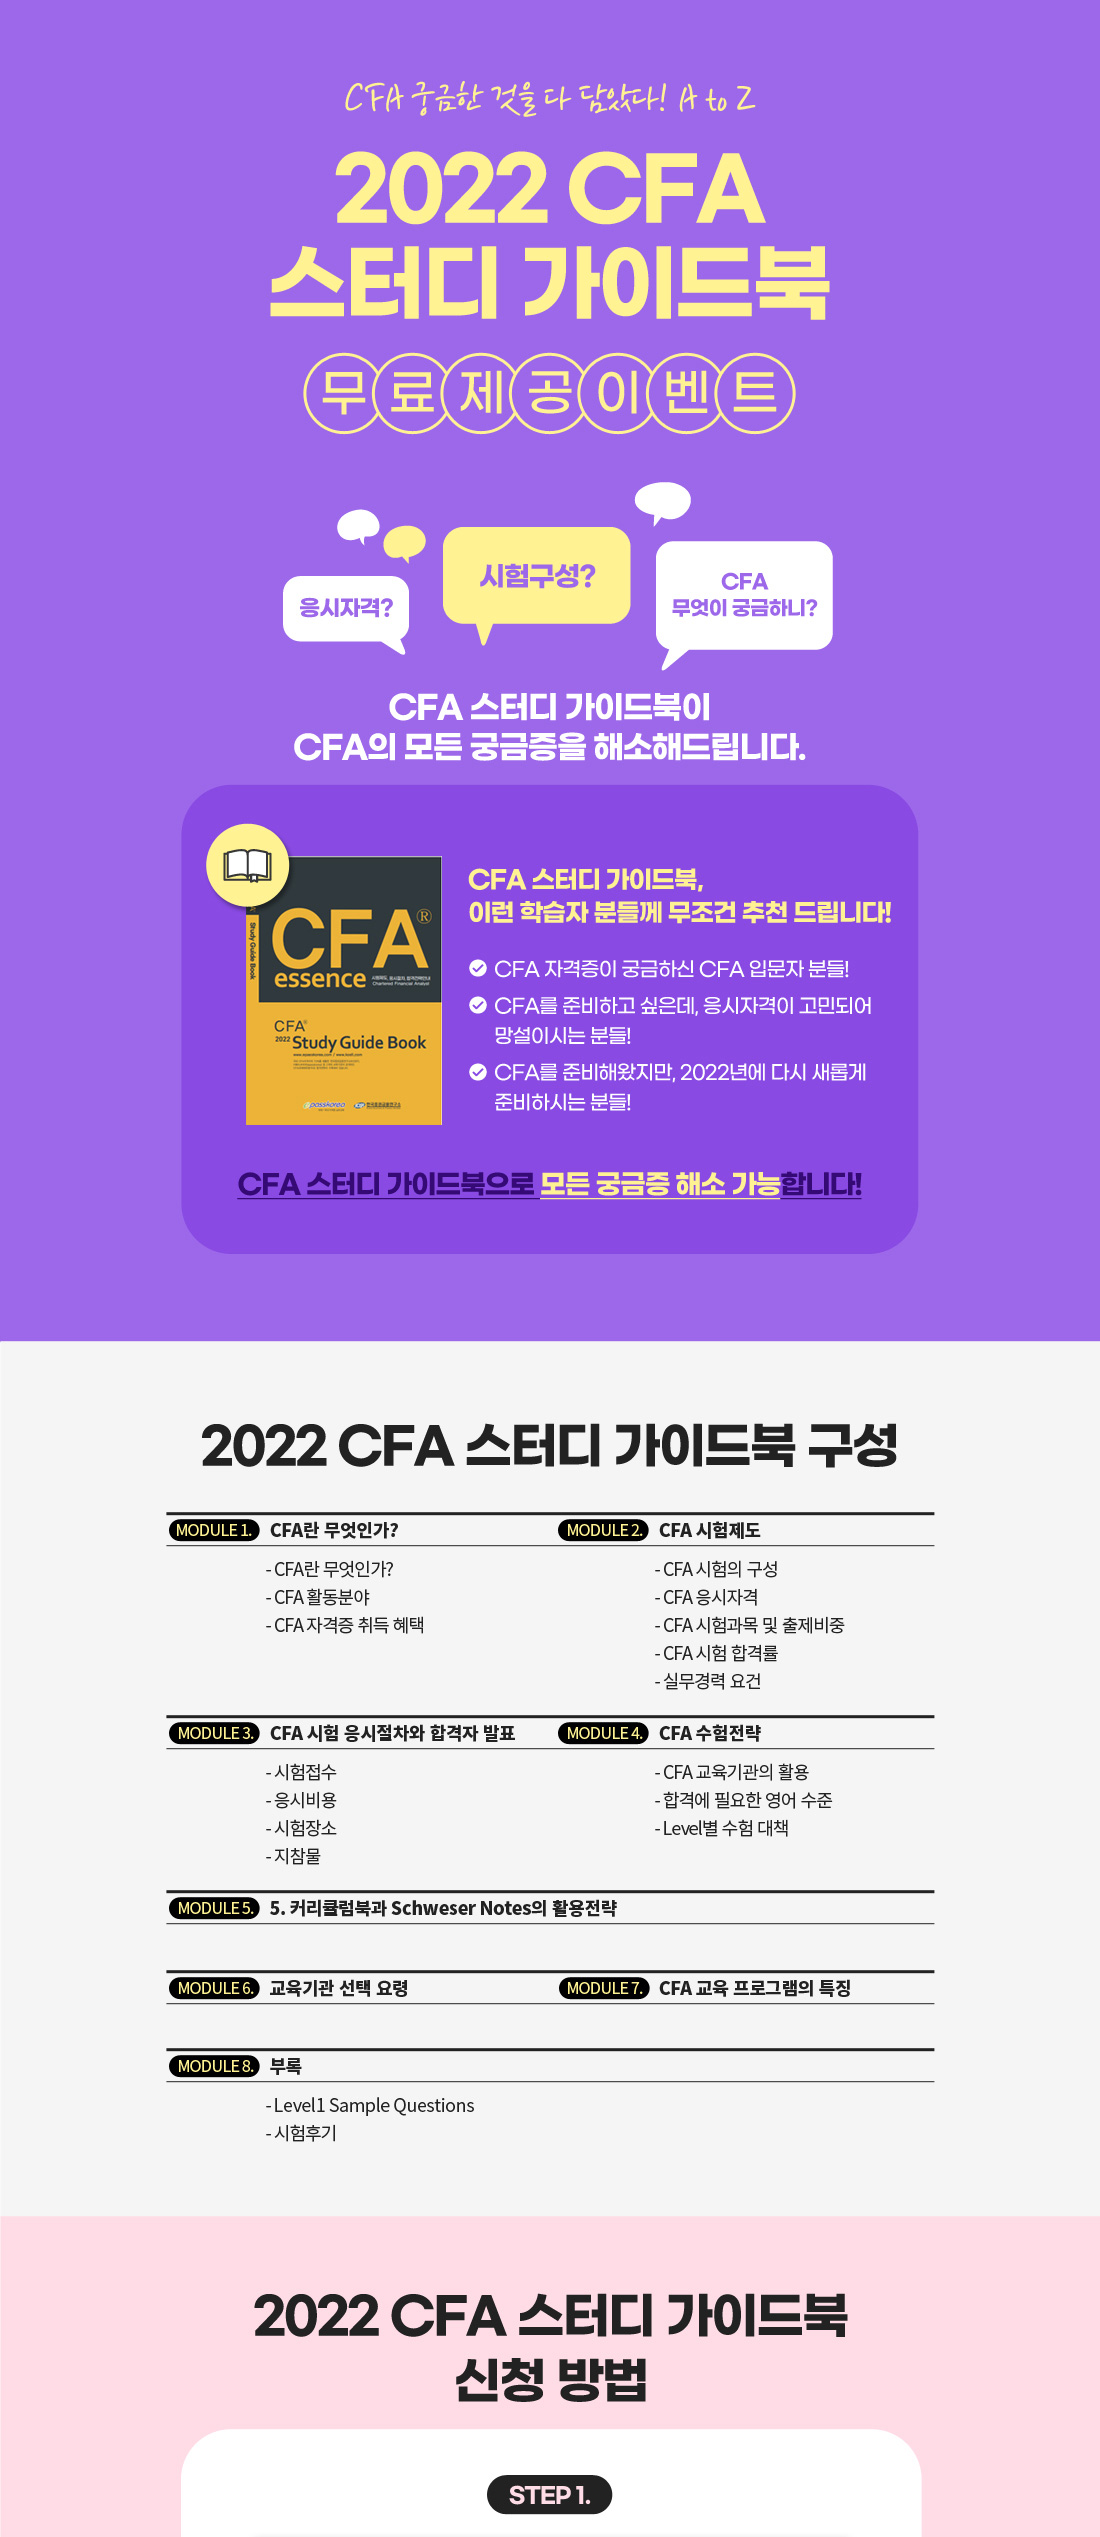 2022 CFA 스터디 가이드북 무료 제공 이벤트